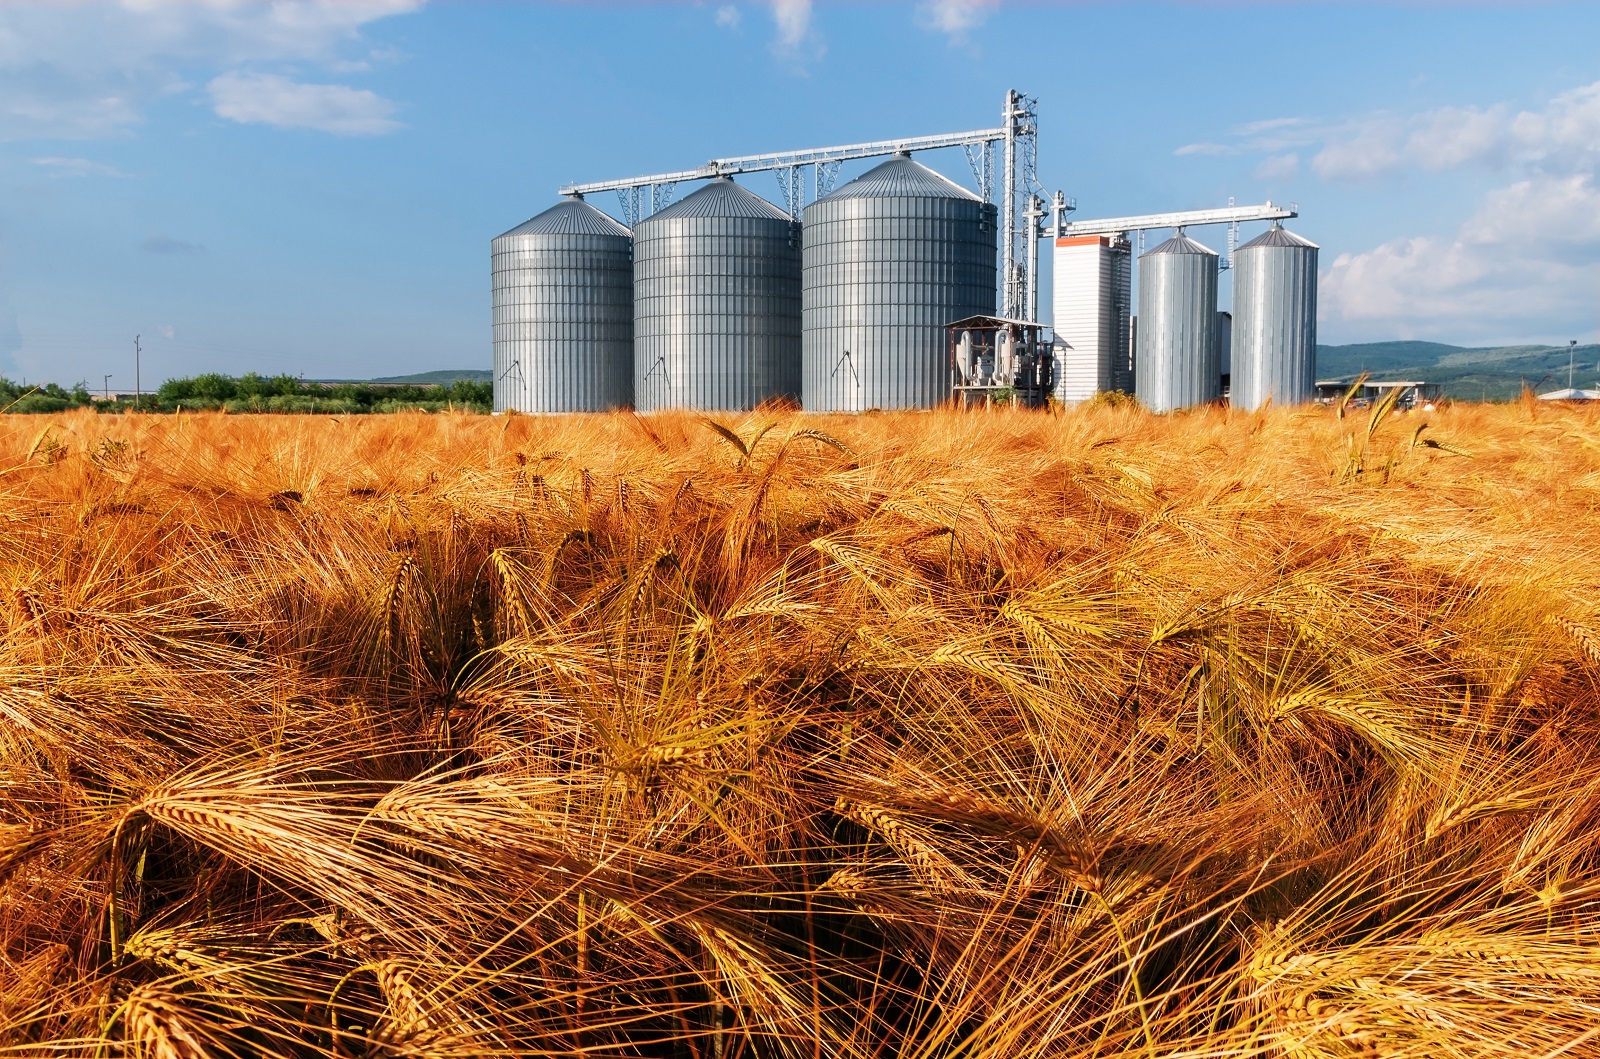 رفع كفاءة مطاحن وصوامع «مصر الوسطي» لزيادة قدراتها الإنتاجية والتخزينية استعداد لموسم القمح